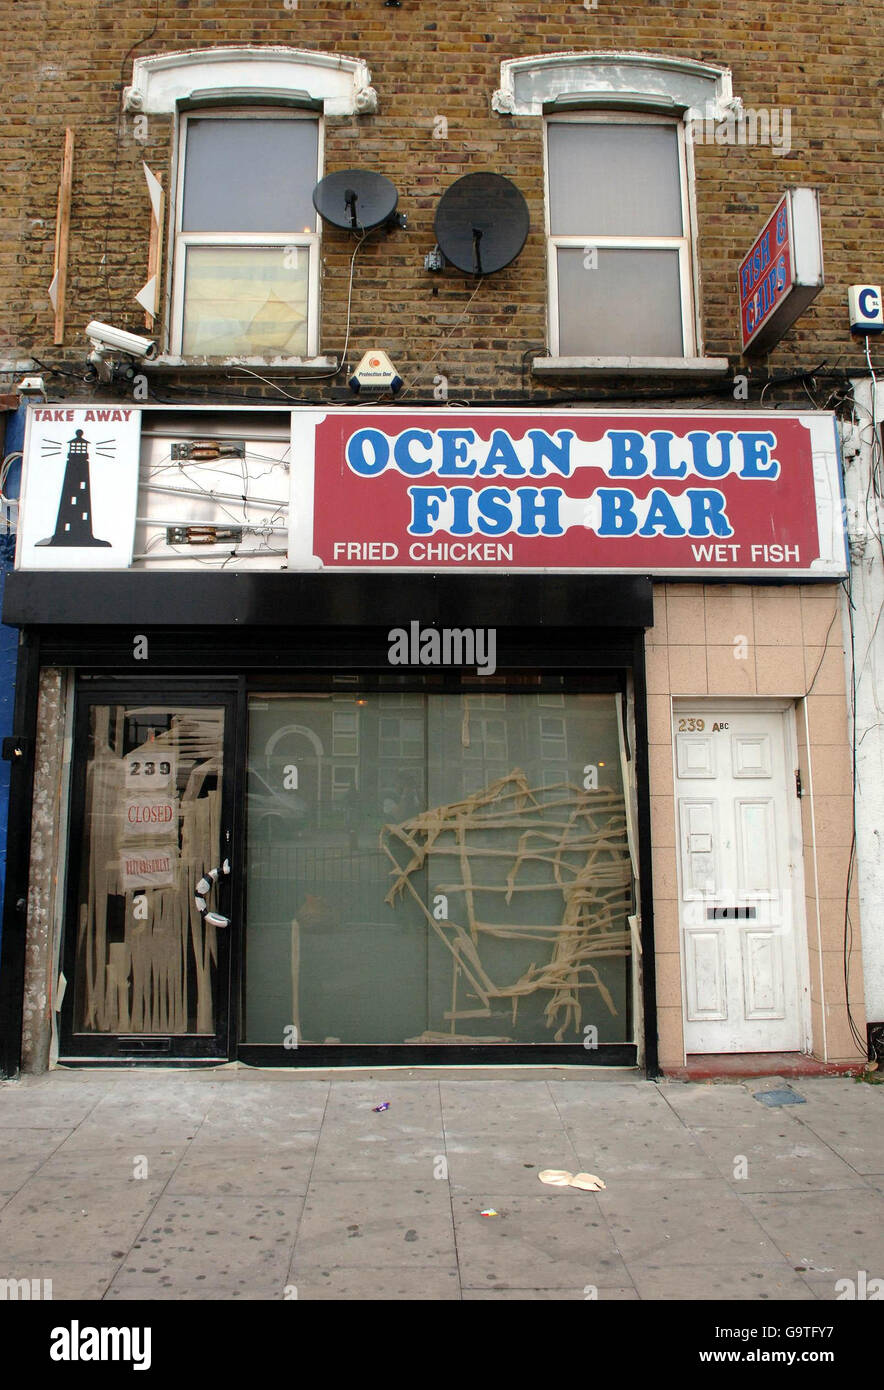 Die Fischbar Ocean Blue an der Barking Road in Plaistow, im Osten Londons, wo gestern gegen 23.30 Uhr ein 14-jähriger Junge bei einem Drive-by-Schießen in den Hals geschossen wurde. Stockfoto